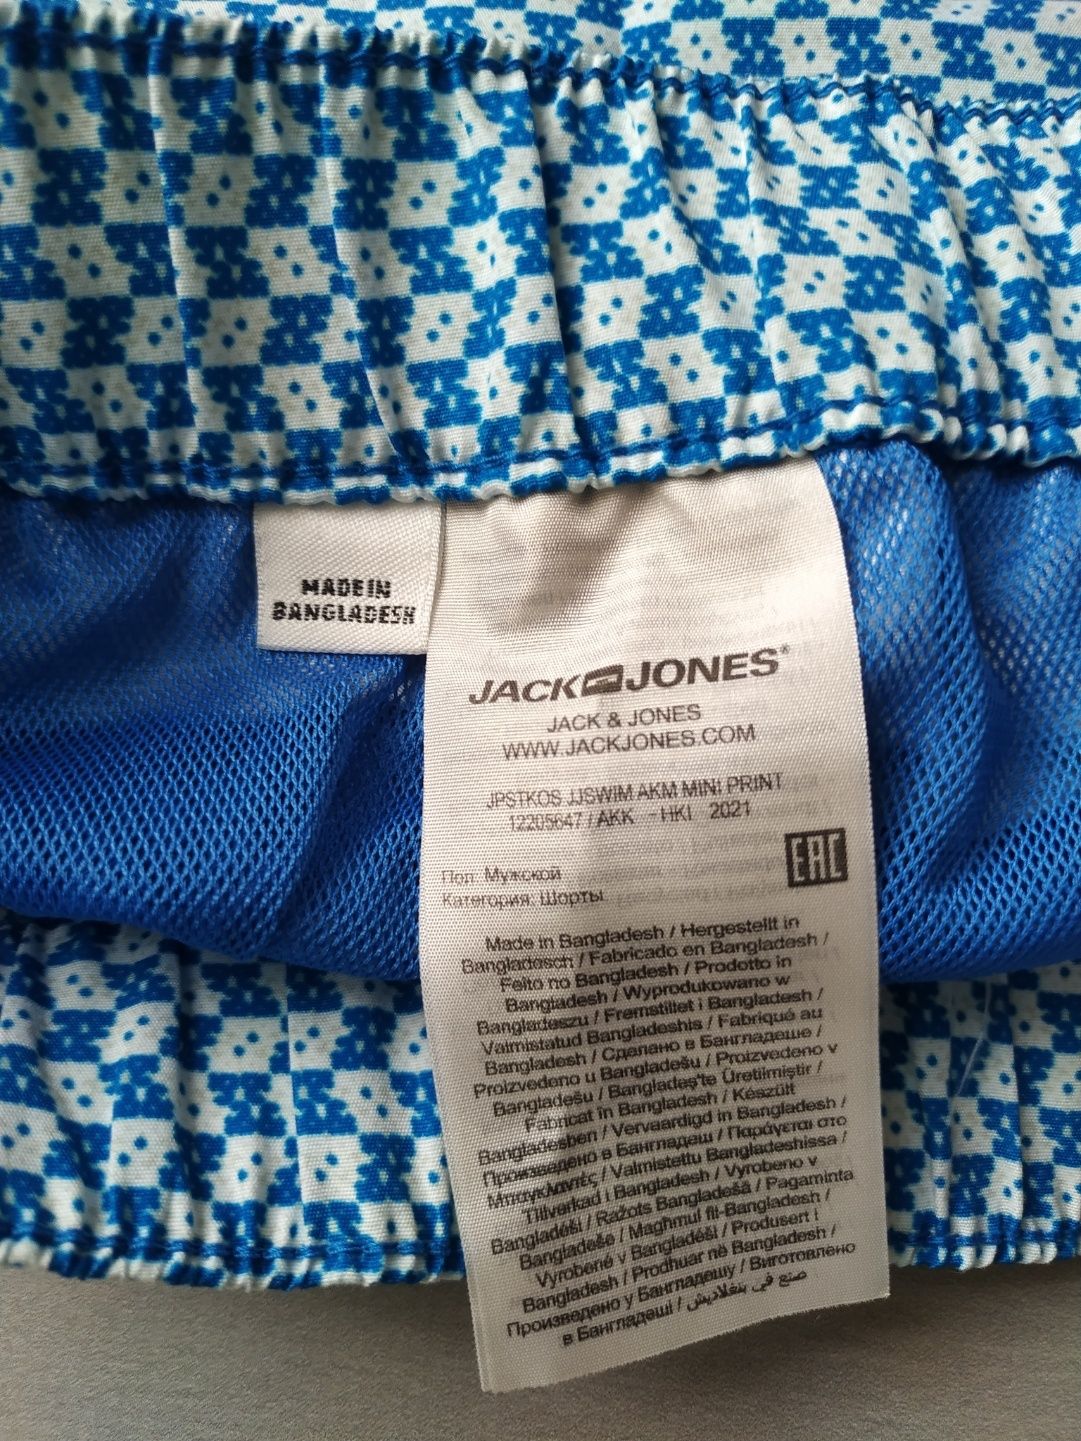 Короткі чоловічі пляжні шорти Jack& Jones. L розмір